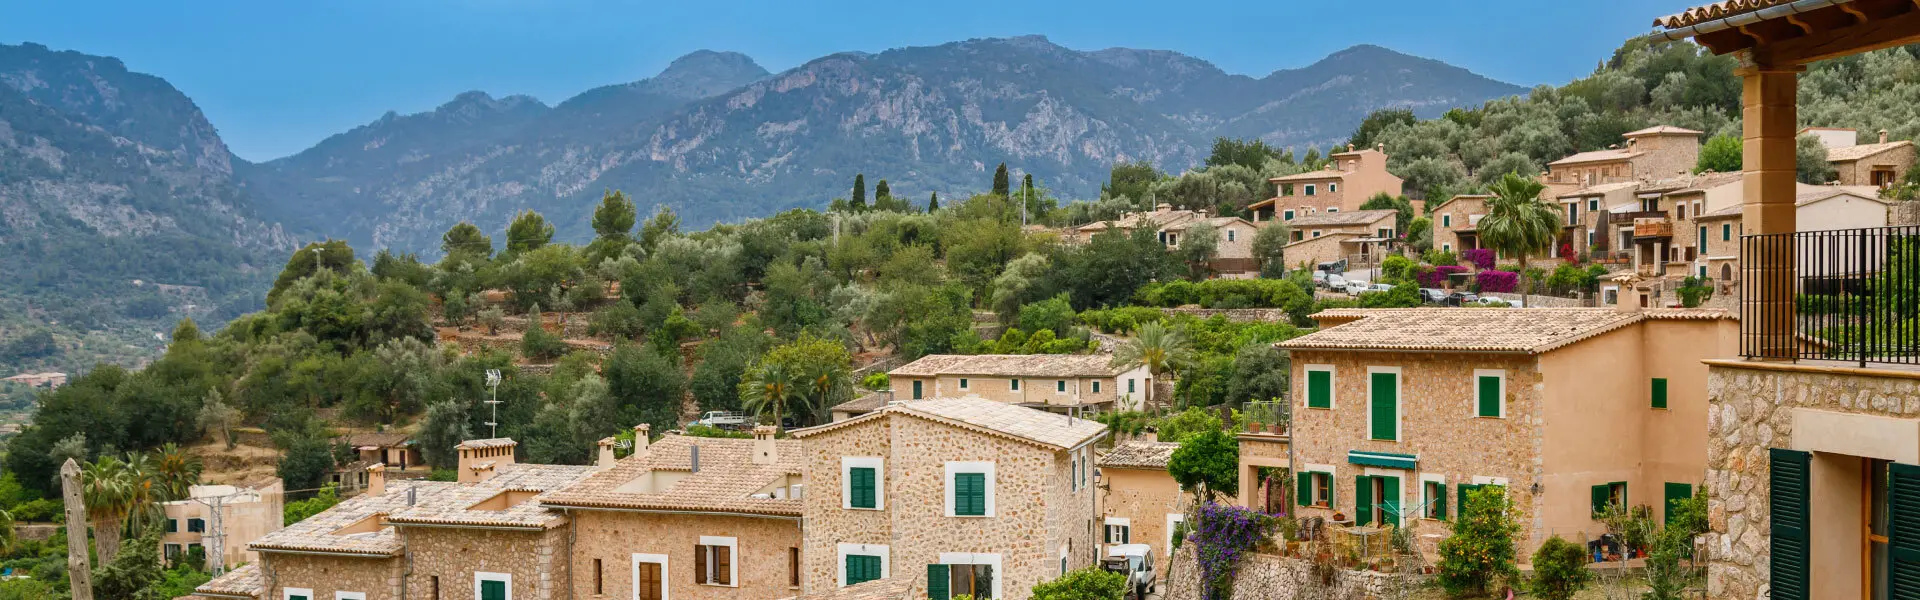 Propiedades tradicionales en Mallorca anidadas en la ladera